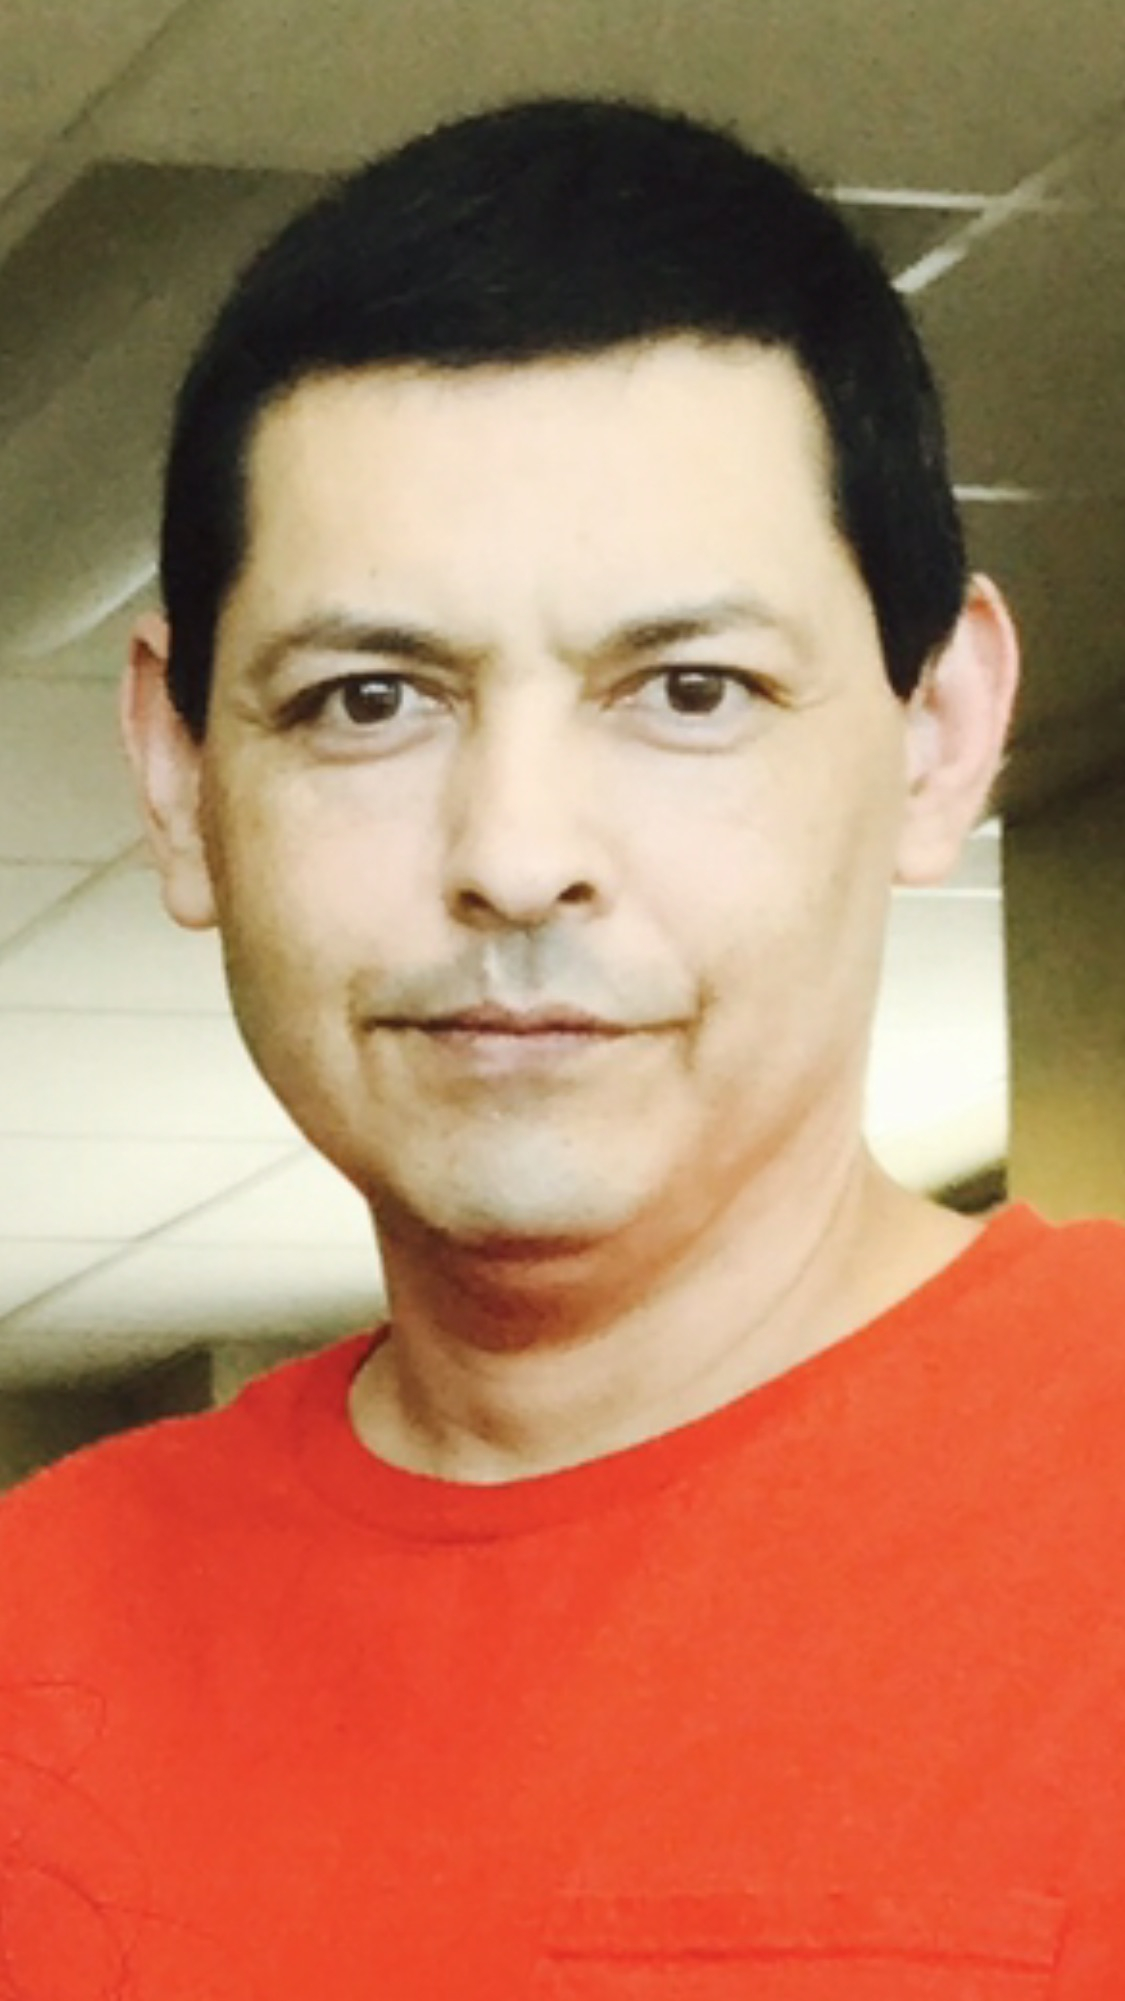 Jose Morales Jr